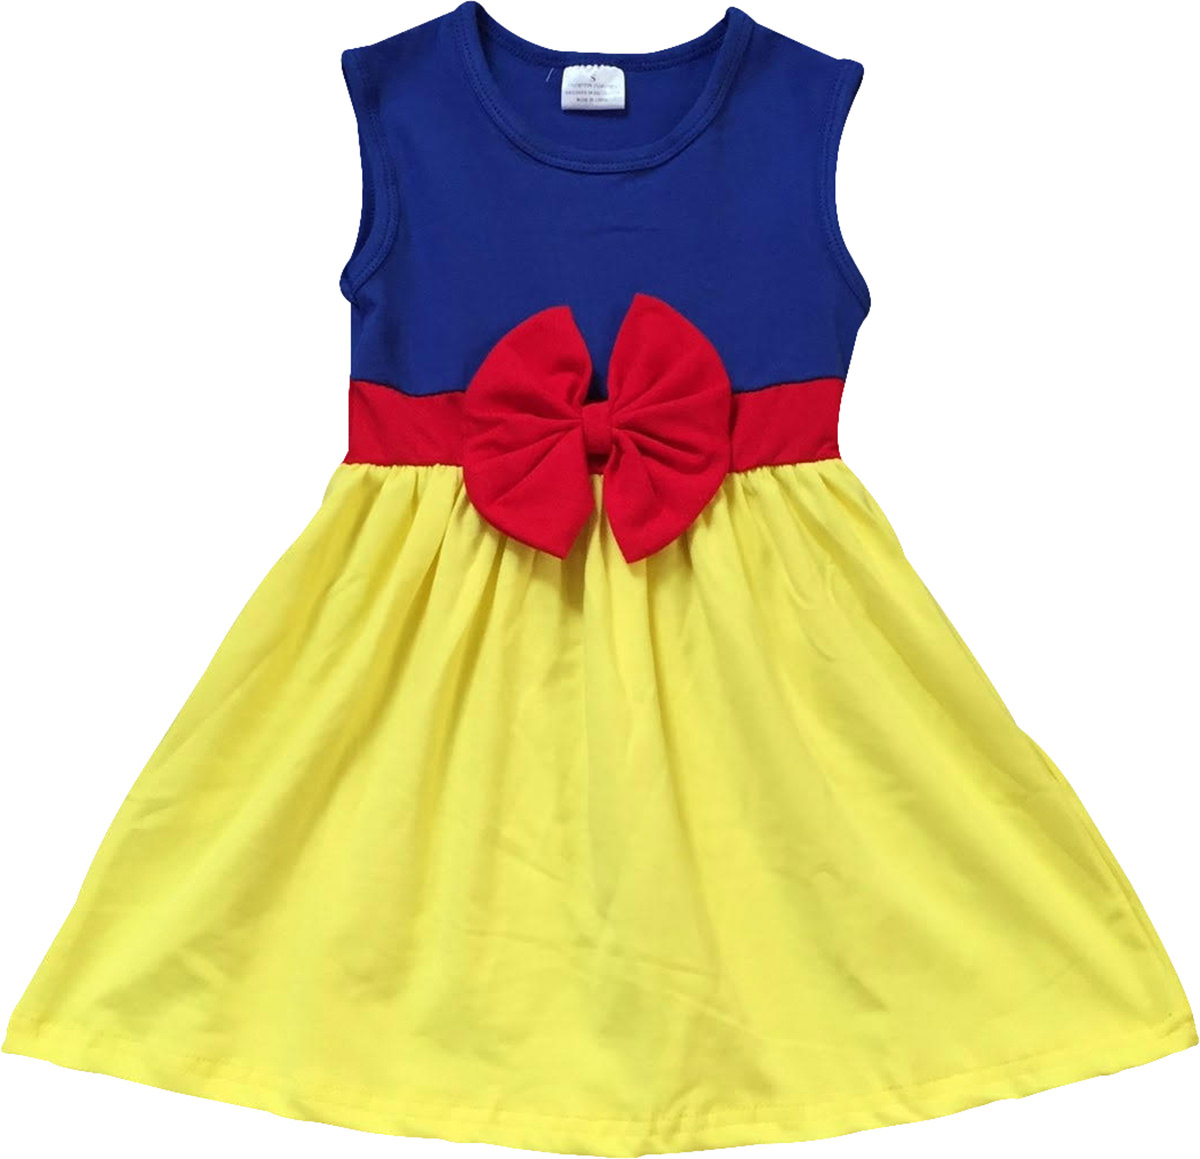 Little Flower Girl Kids Cute Sleeveless Bow Summer Party Flower Girl Dress Yellow 4 M 201280 BNY Corner - image 1 of 1